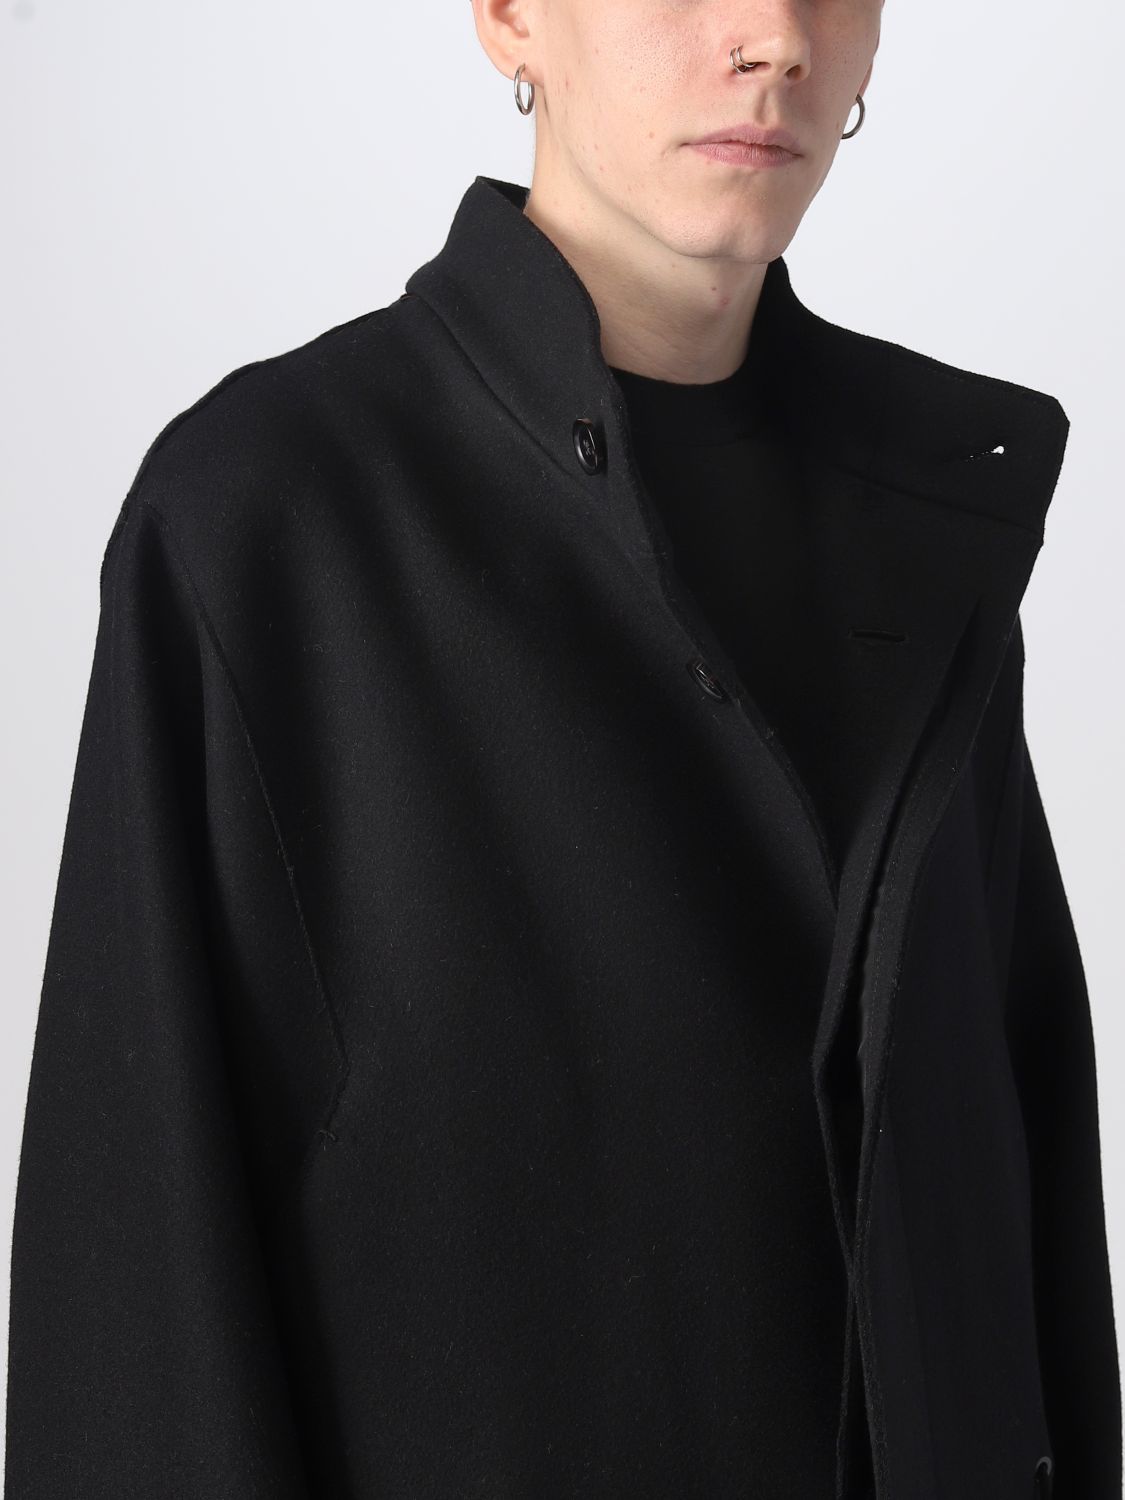 ZEGNA: coat for man - Black | Zegna coat 4870574D4GN0 online on GIGLIO.COM